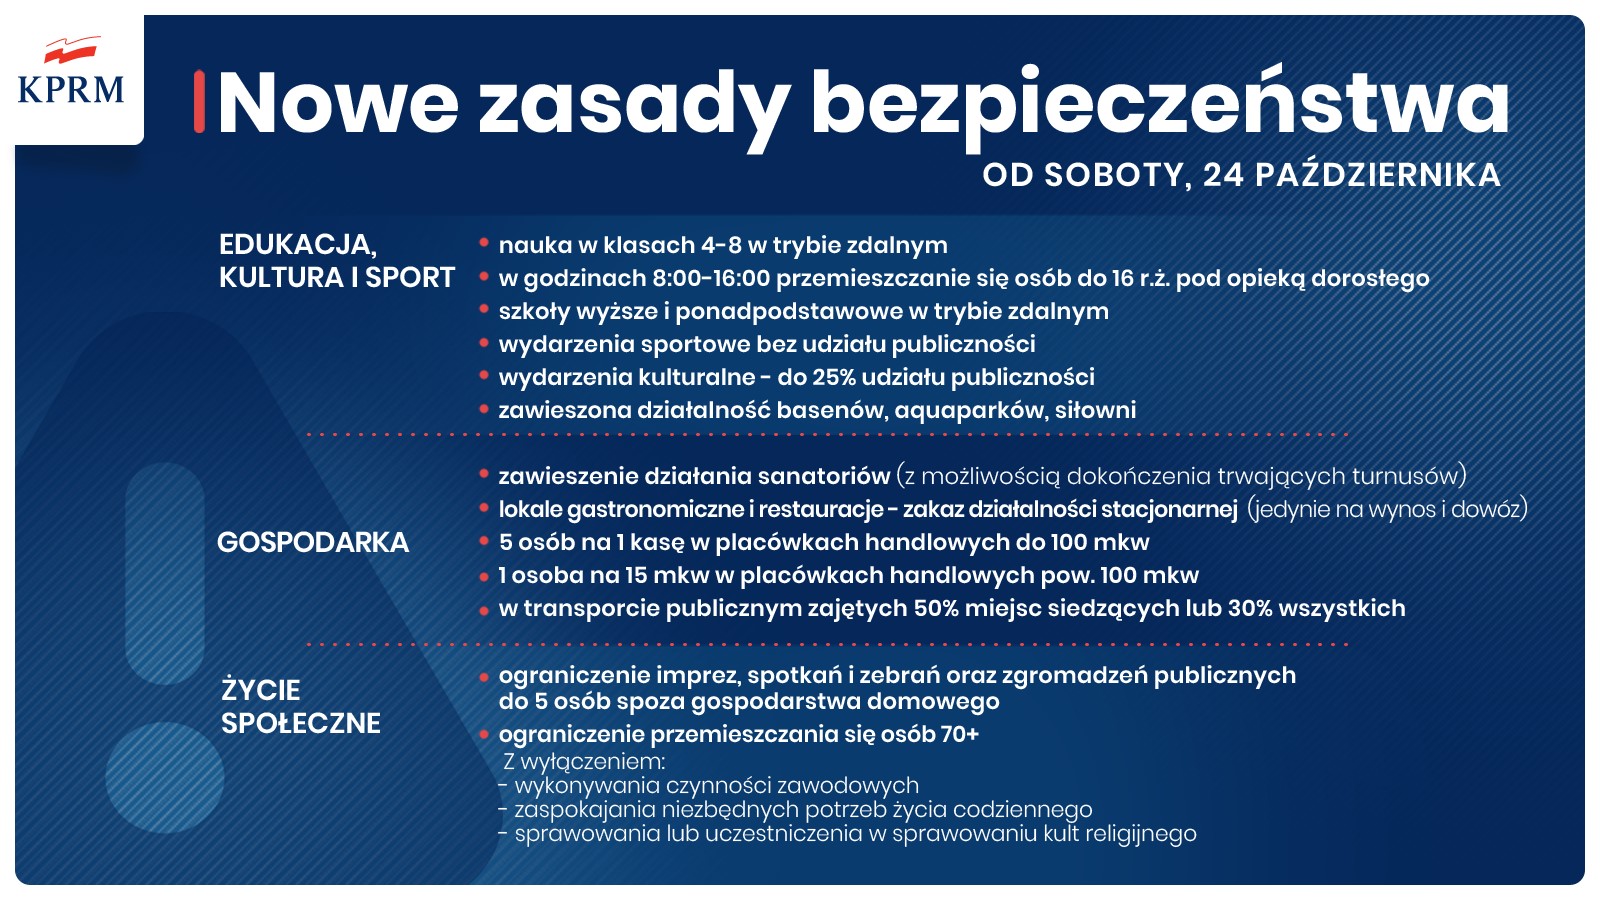 Plakat opisujący nowe zasady bezpieczeństwa, obowiązujące od soboty, 24 października 2020r. Zasady mają ochronić obywateli przed pandemią COVID-2.